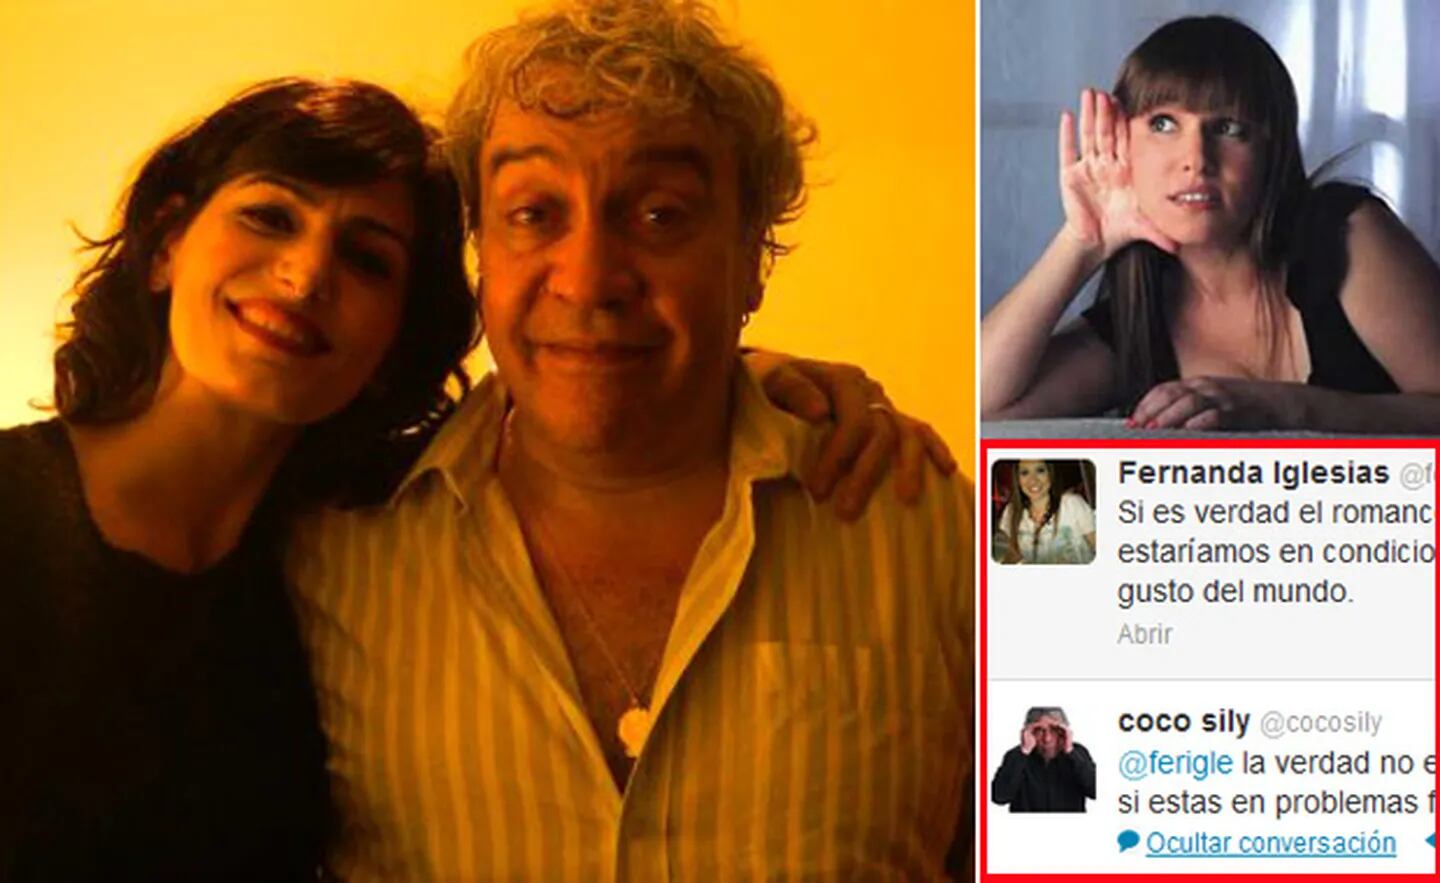 Cecilia Milone desmintió romance con Coco Sily. Y el humorista se cruzó con Fernanda Iglesias en Twitter. (Fotos: Twitter y Web)